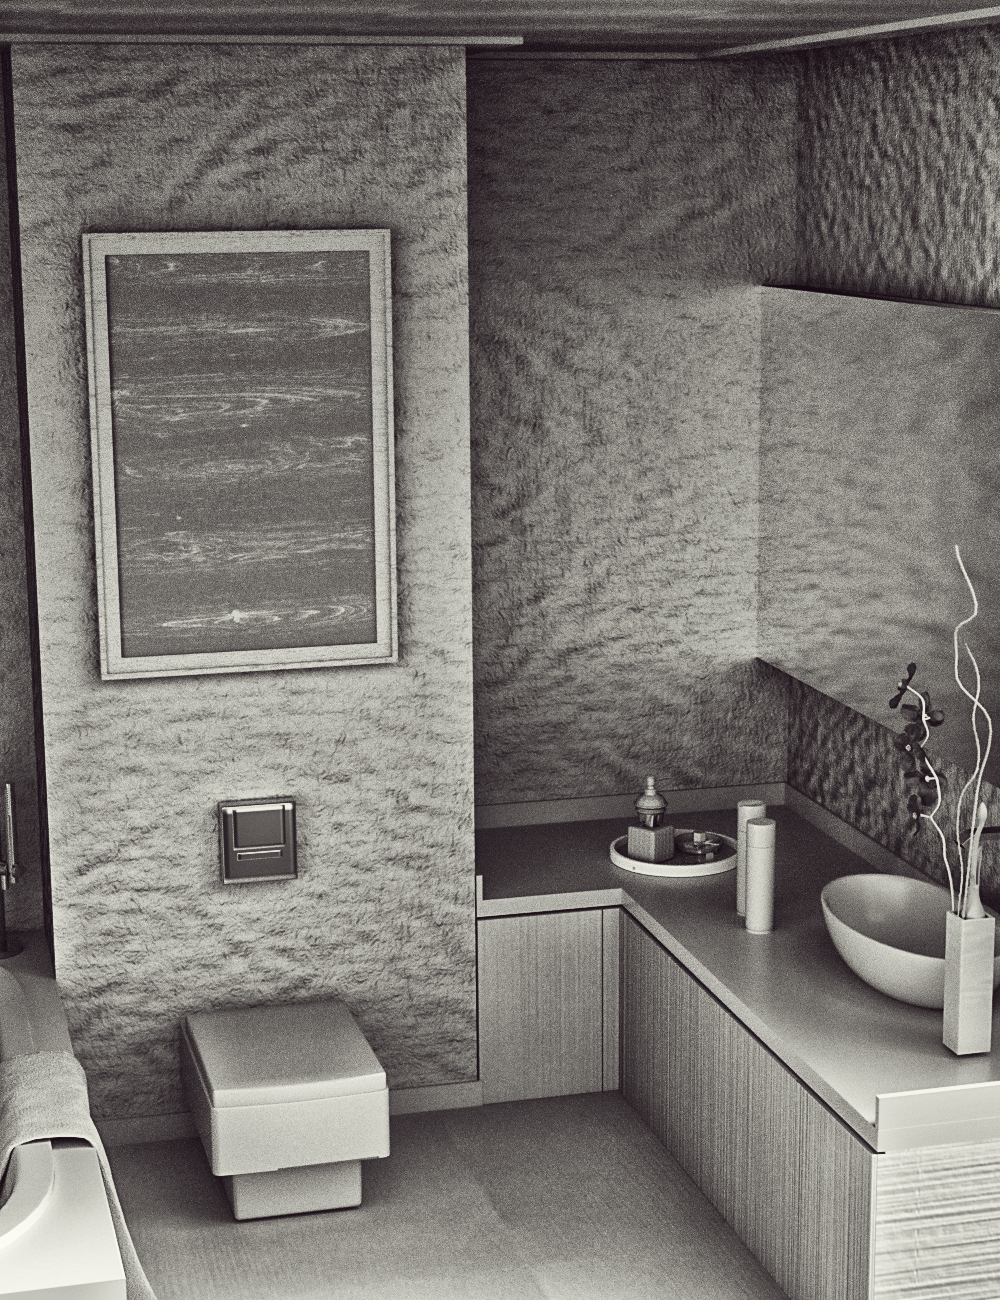 FE Modern Bathroom GreyRoom by: FeSoul, 3D Models by Daz 3D